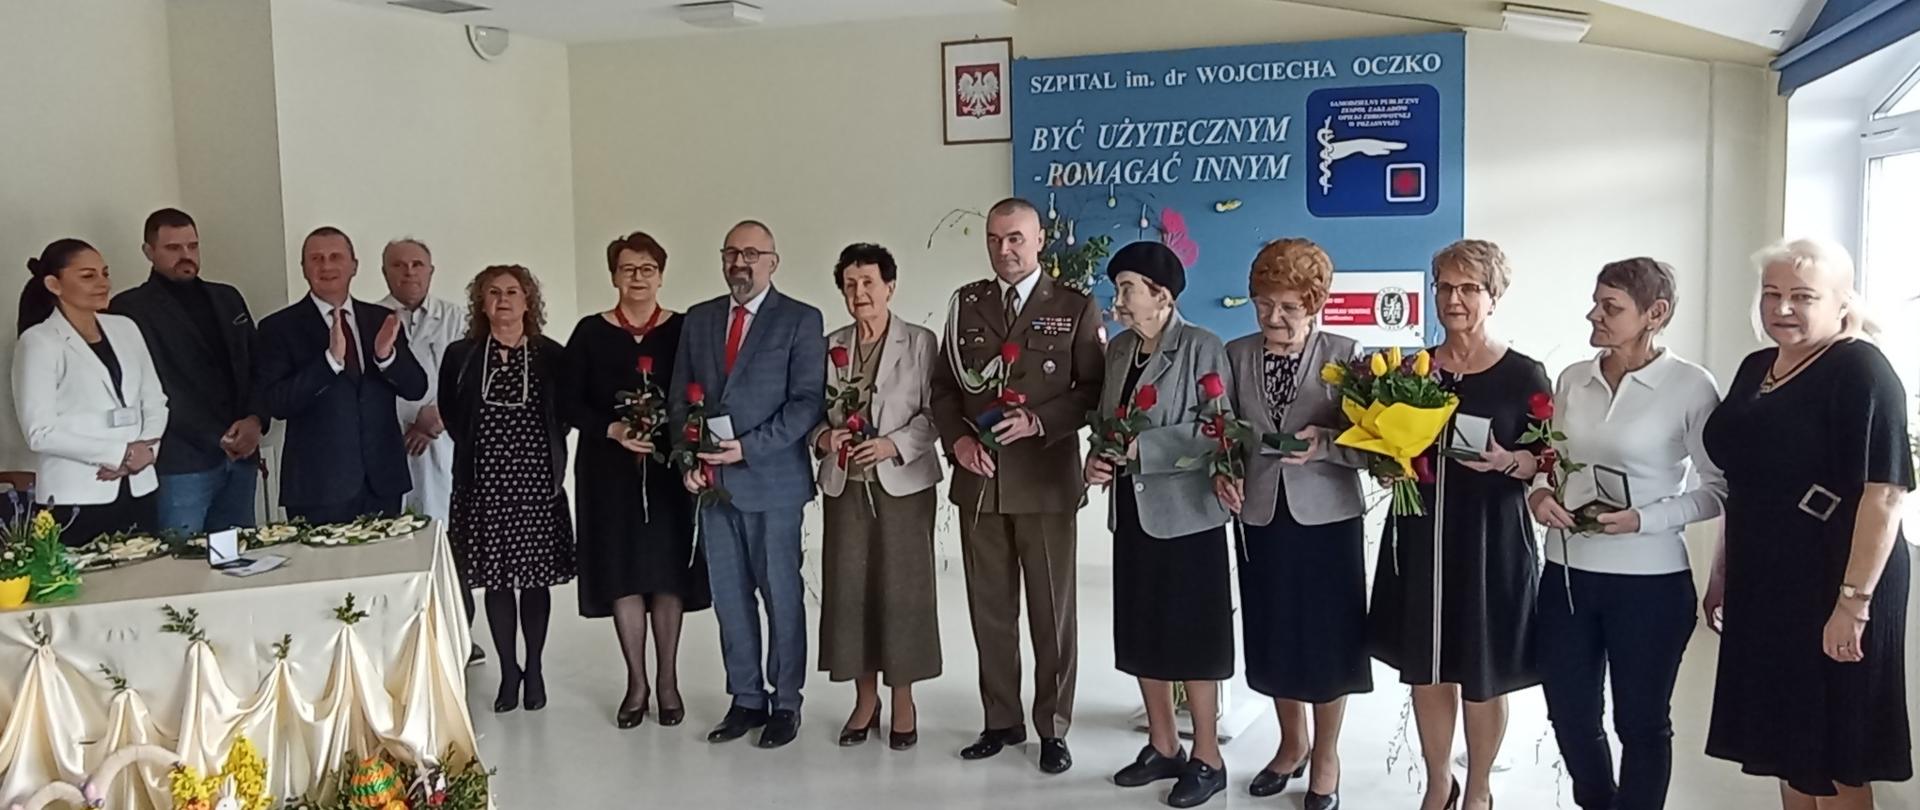 Zdjęcie grupowe osób odznaczonych Medalem "Za zasługi dla Szpitala w Przasnyszu". 